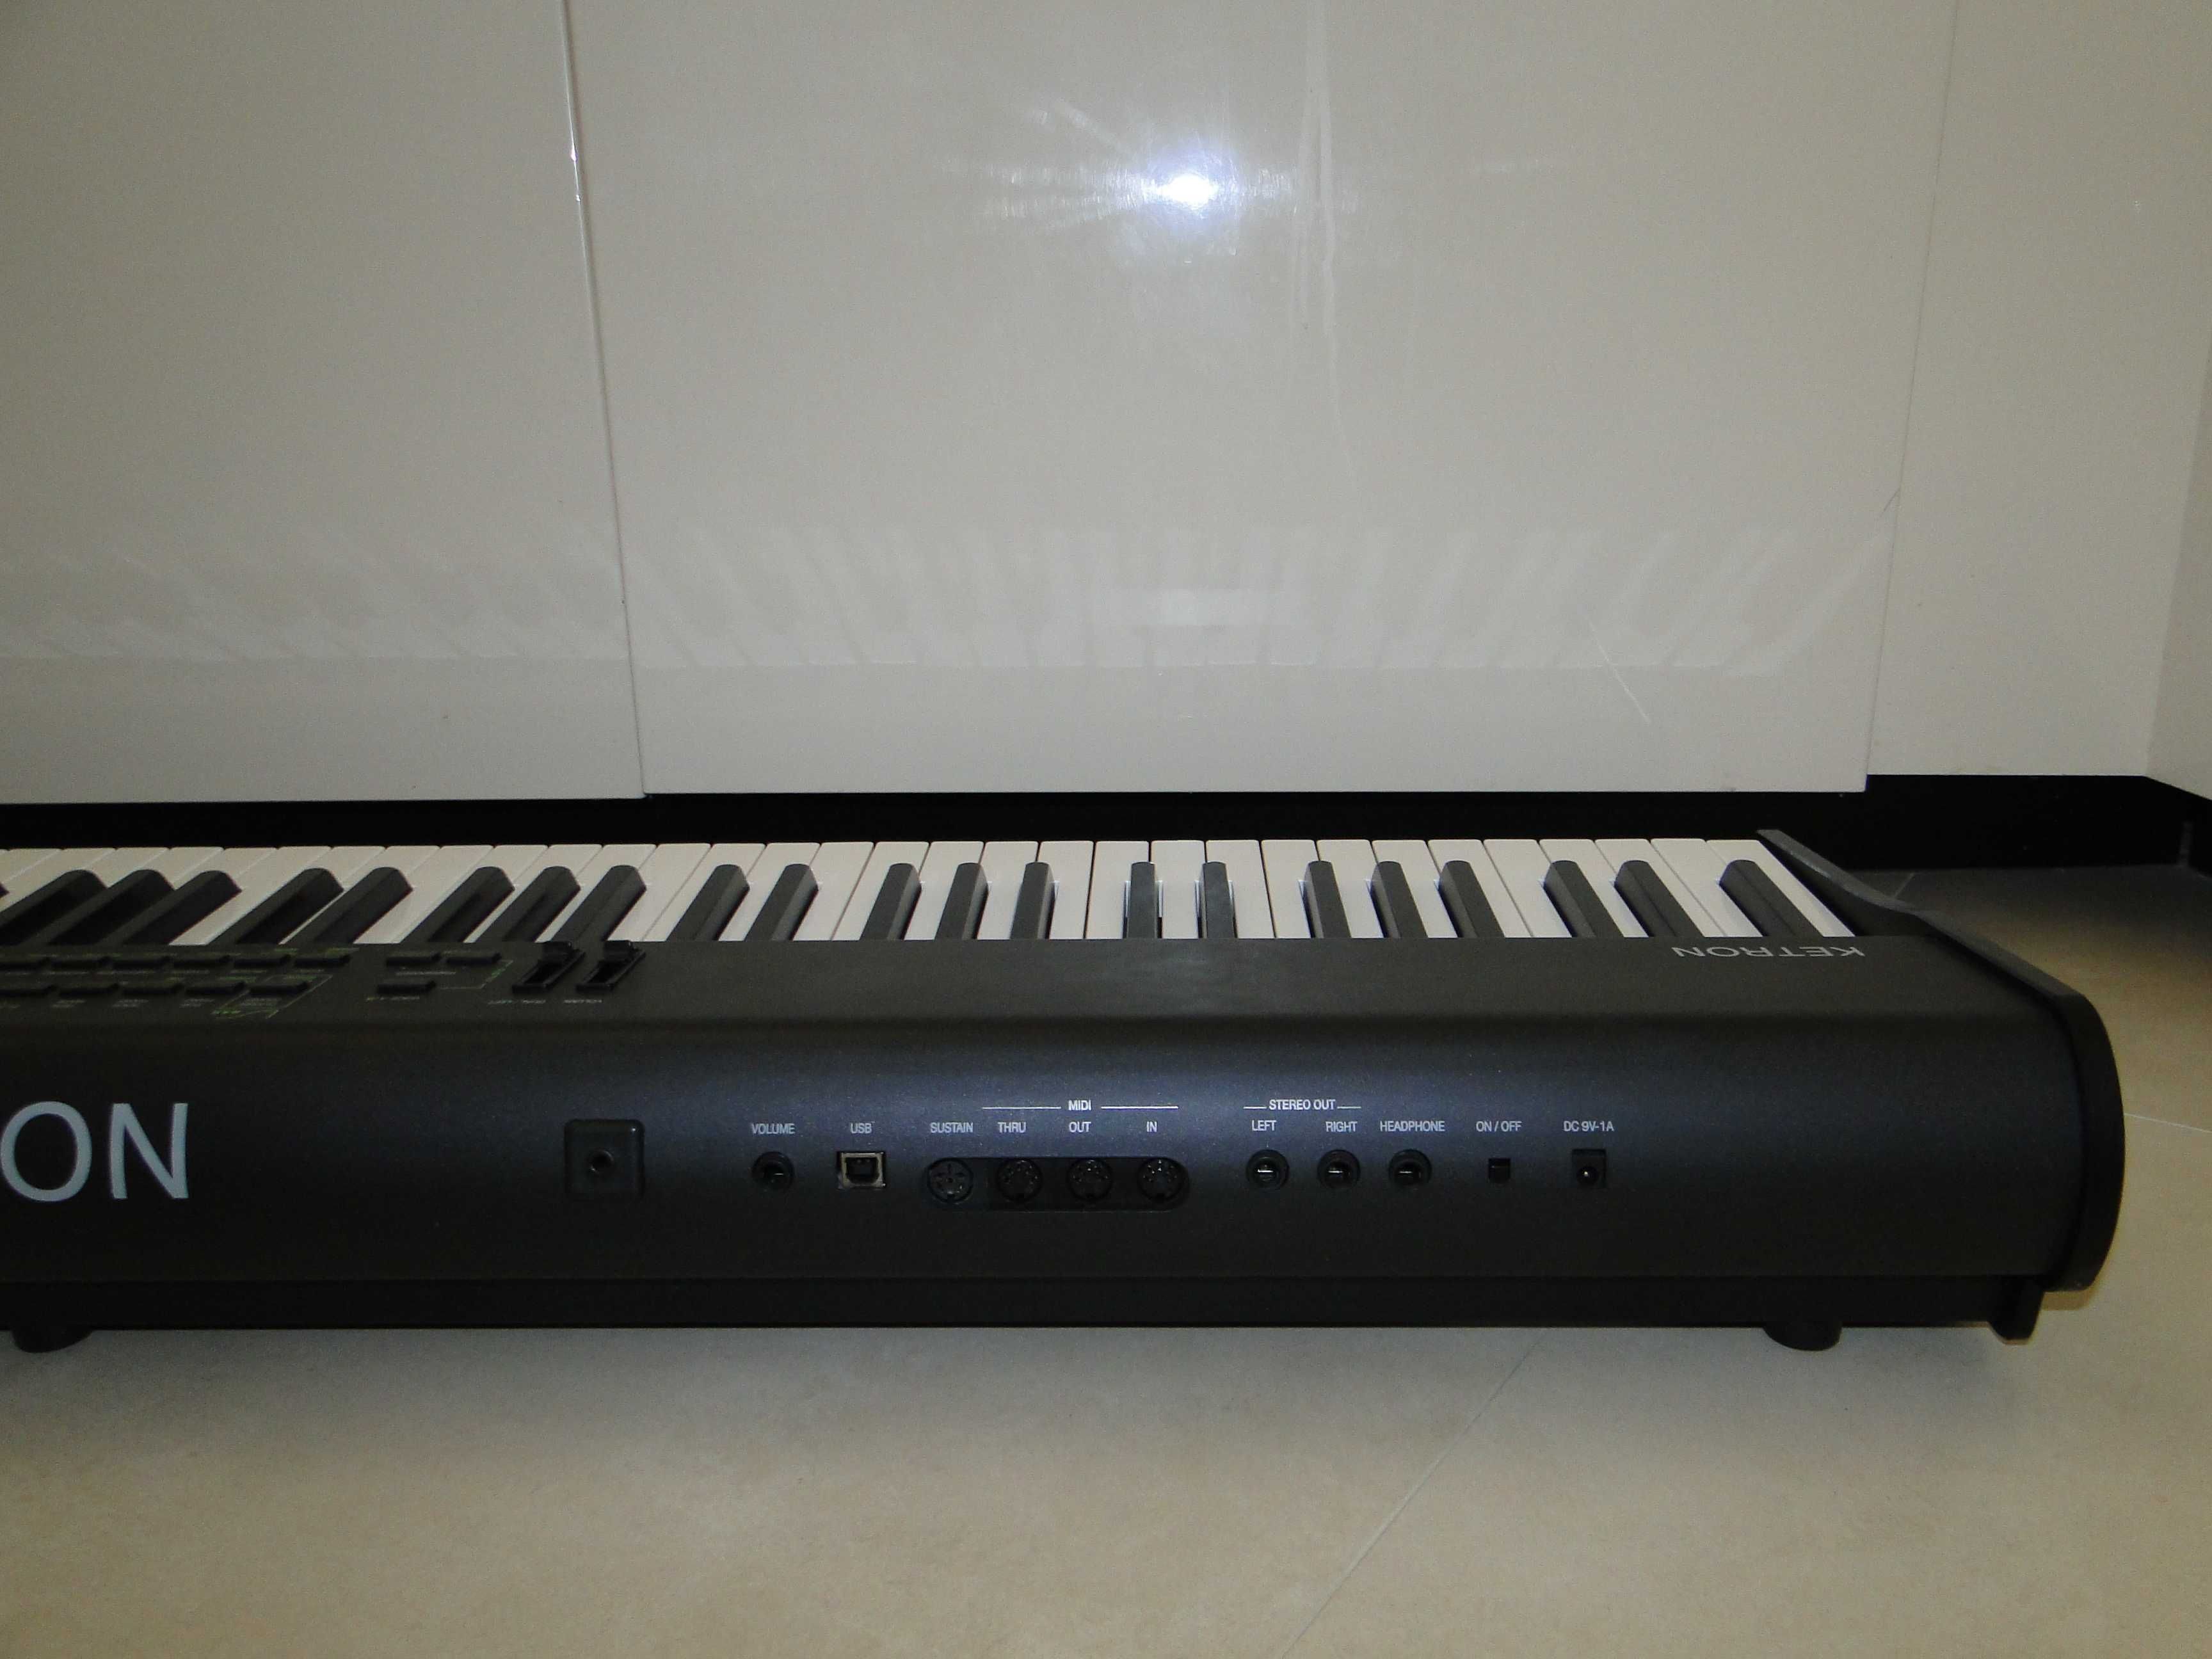 Profesjonalne Piano Cyfrowe KETRON GP-1.Piękne Brzmienie.Ideał.Okazja